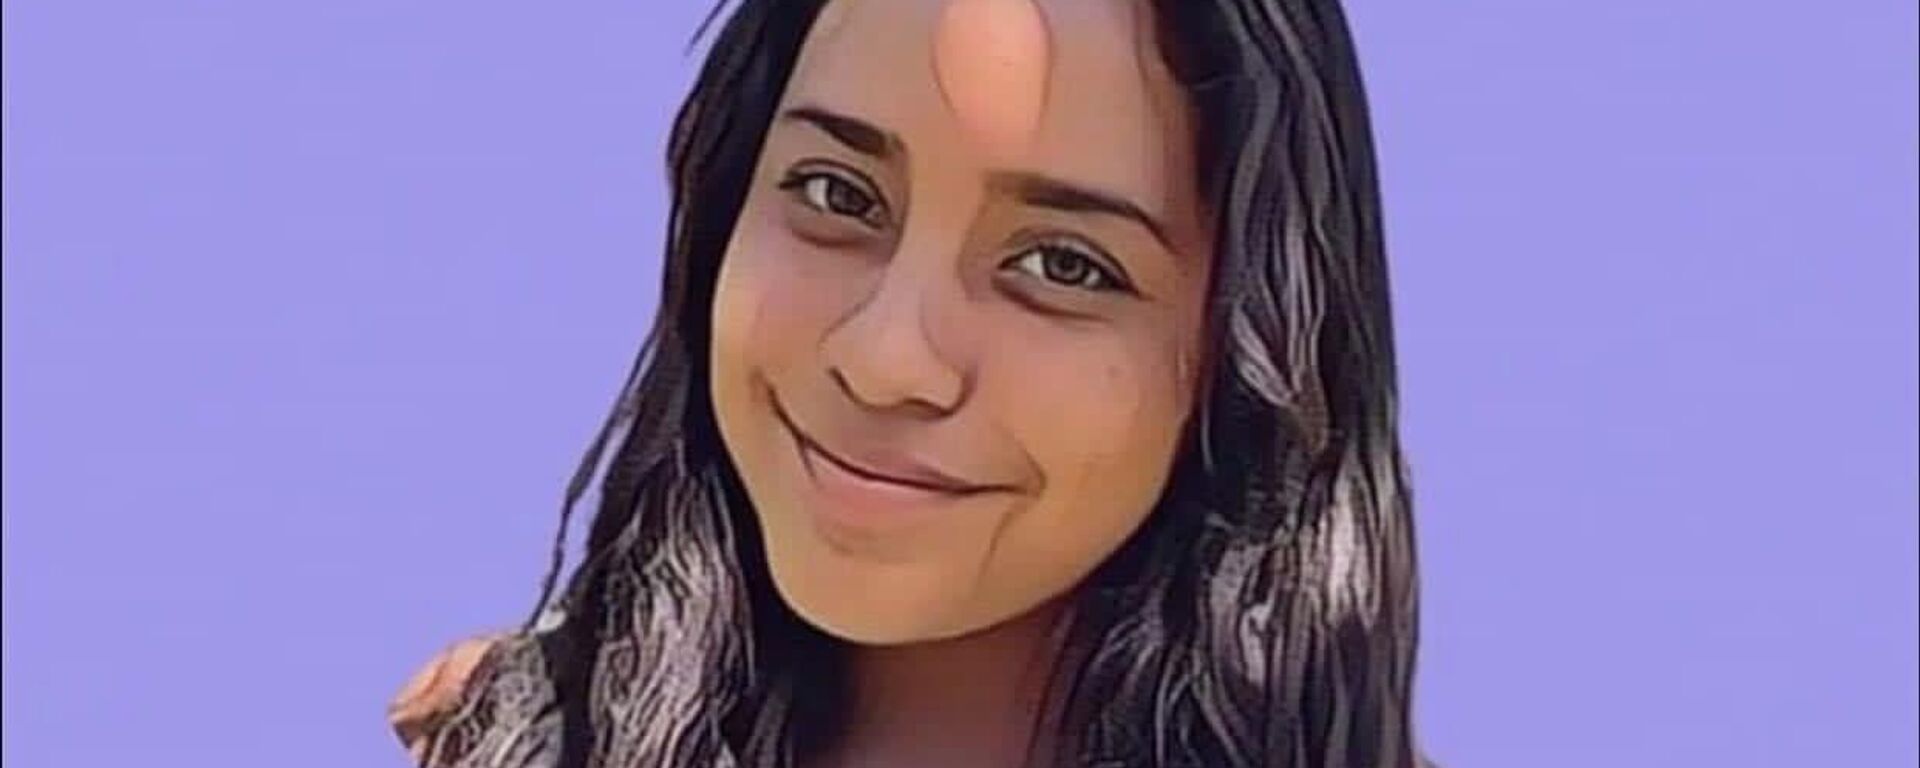 Kimberly Melissa Díaz Ortiz, joven de 14 años asesinada a puñaladas en México - Sputnik Mundo, 1920, 06.07.2022